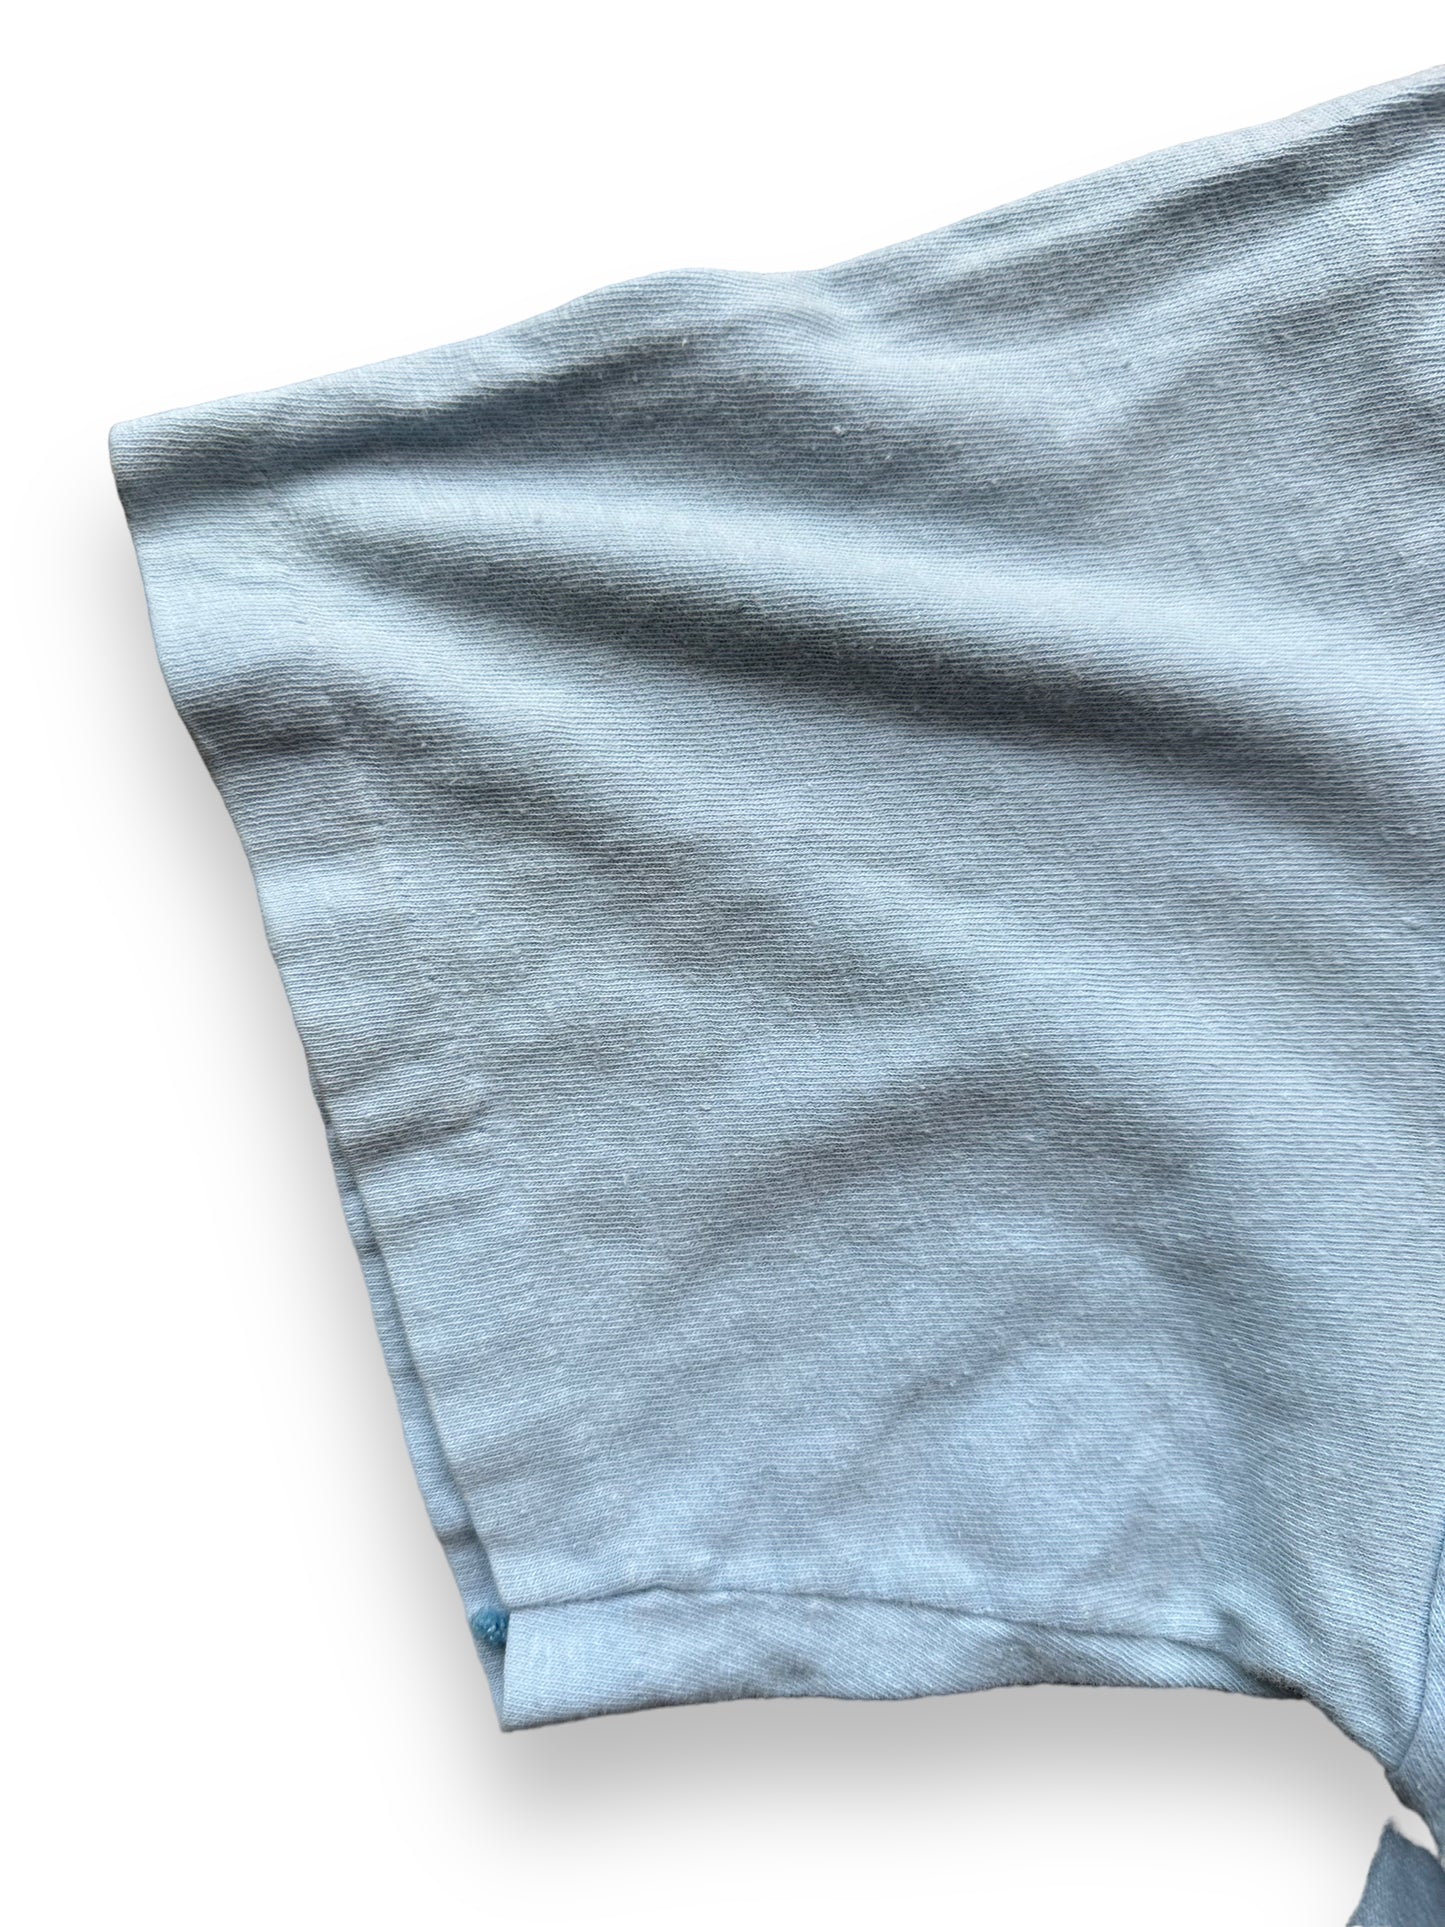 Single Stitch Sleeve on Vintage Hawaii Graphic Tee SZ XL | Vintage T-Shirts Seattle | Barn Owl Vintage Tees Seattle